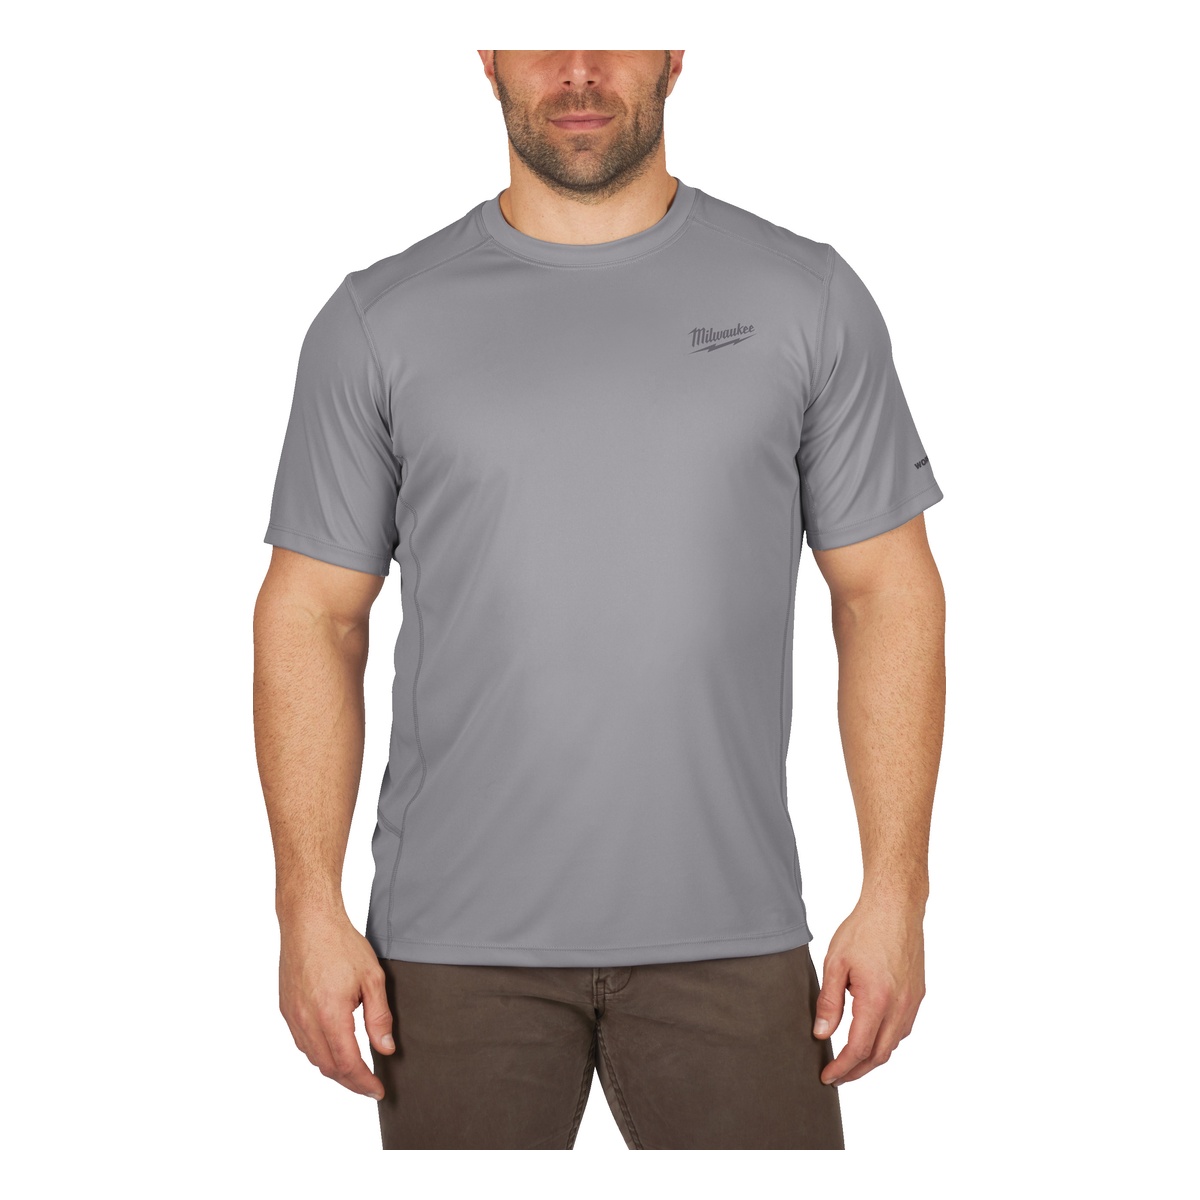 Milwaukee Funktions-T-Shirt grau mit UV-Schutz WWSSG-L - 1 Stk.